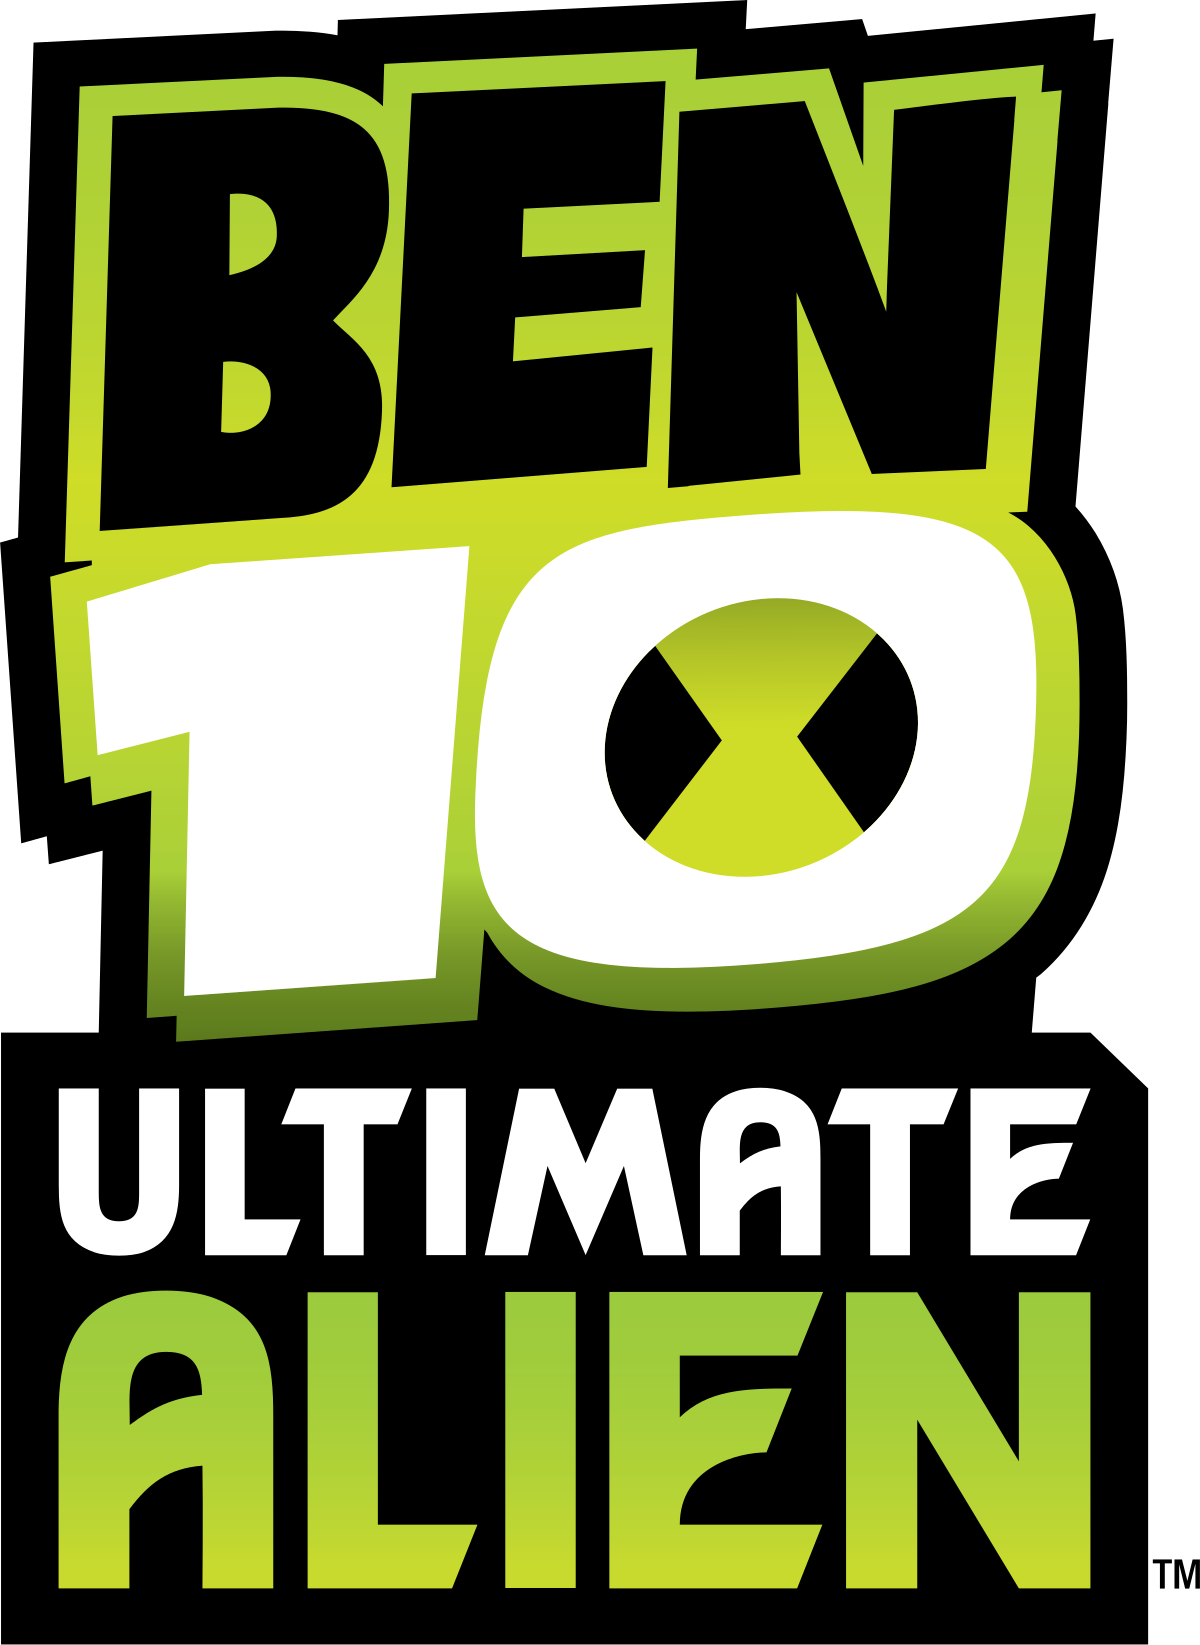 Ben 10 ultimate alien